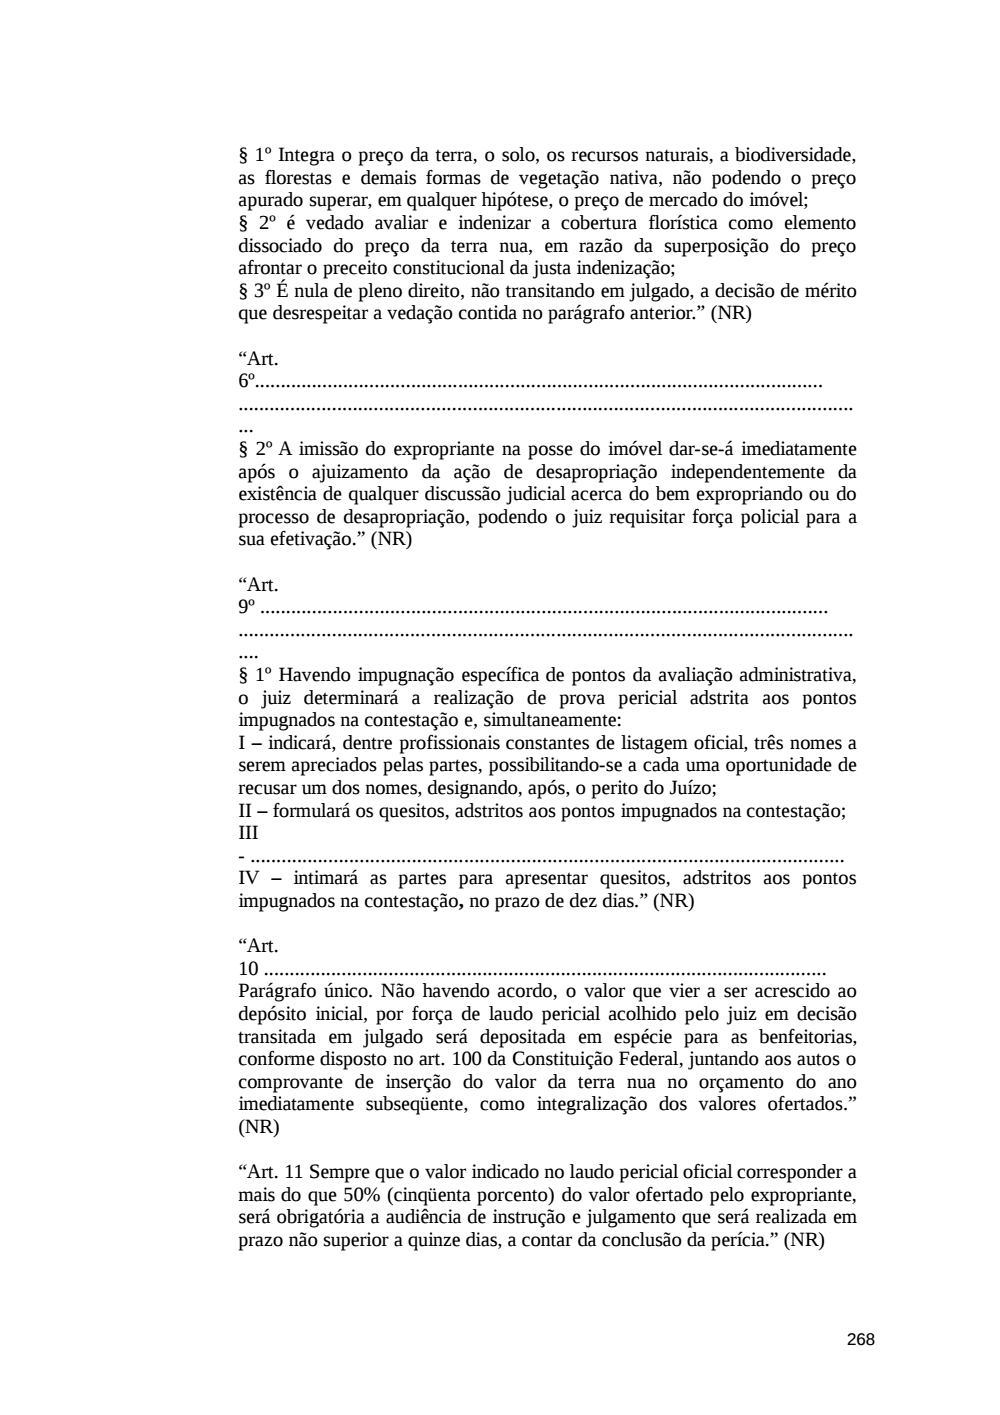 Page 268 from Relatório final da comissão